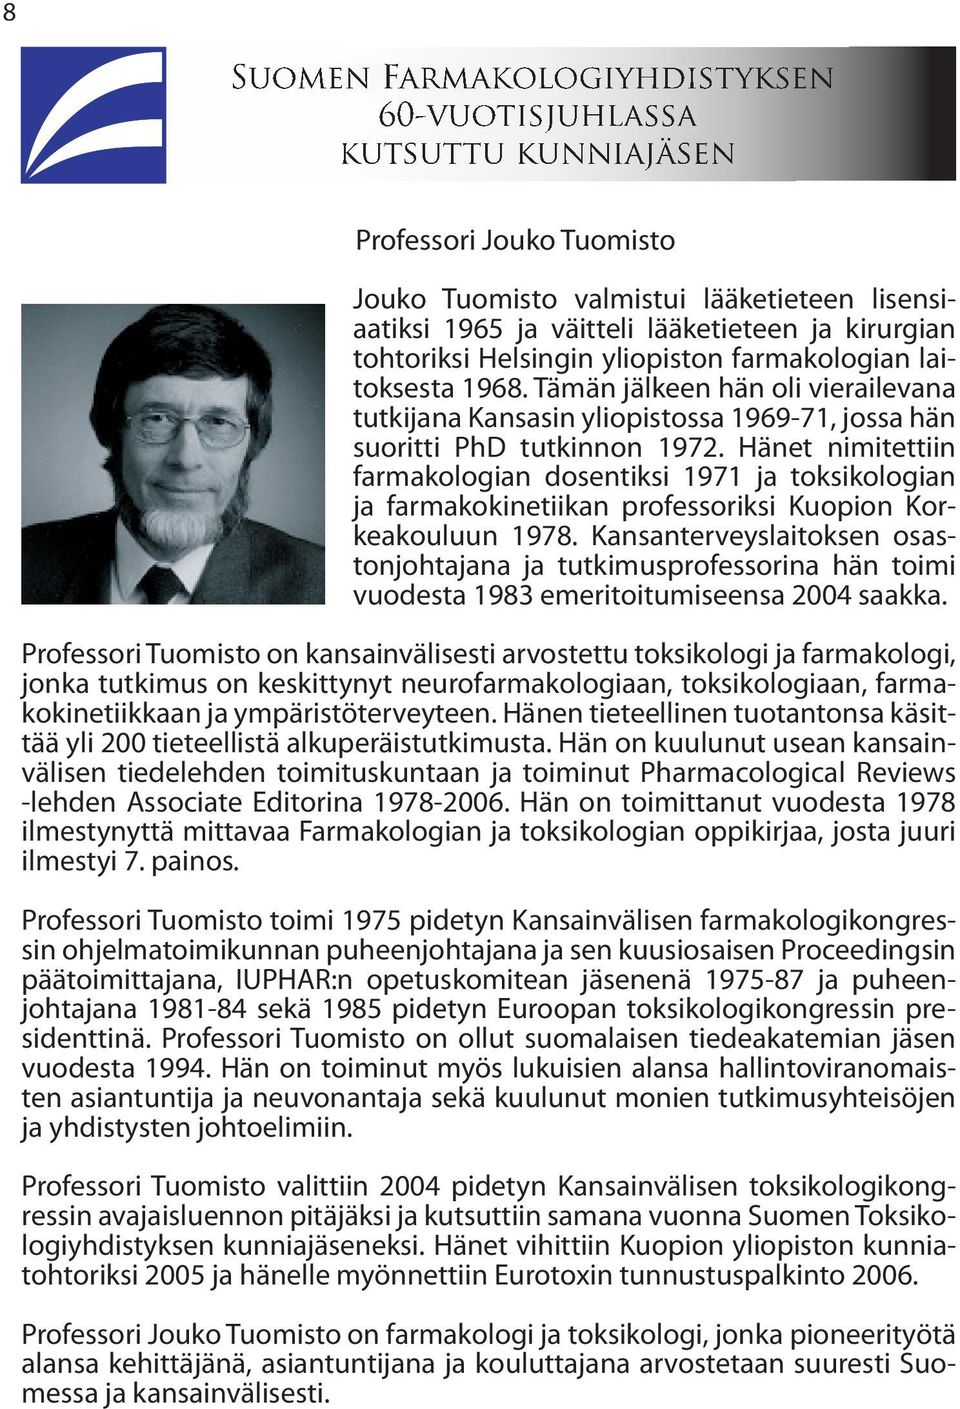 Hänet nimitettiin farmakologian dosentiksi 1971 ja toksikologian ja farmakokinetiikan professoriksi Kuopion Korkeakouluun 1978.